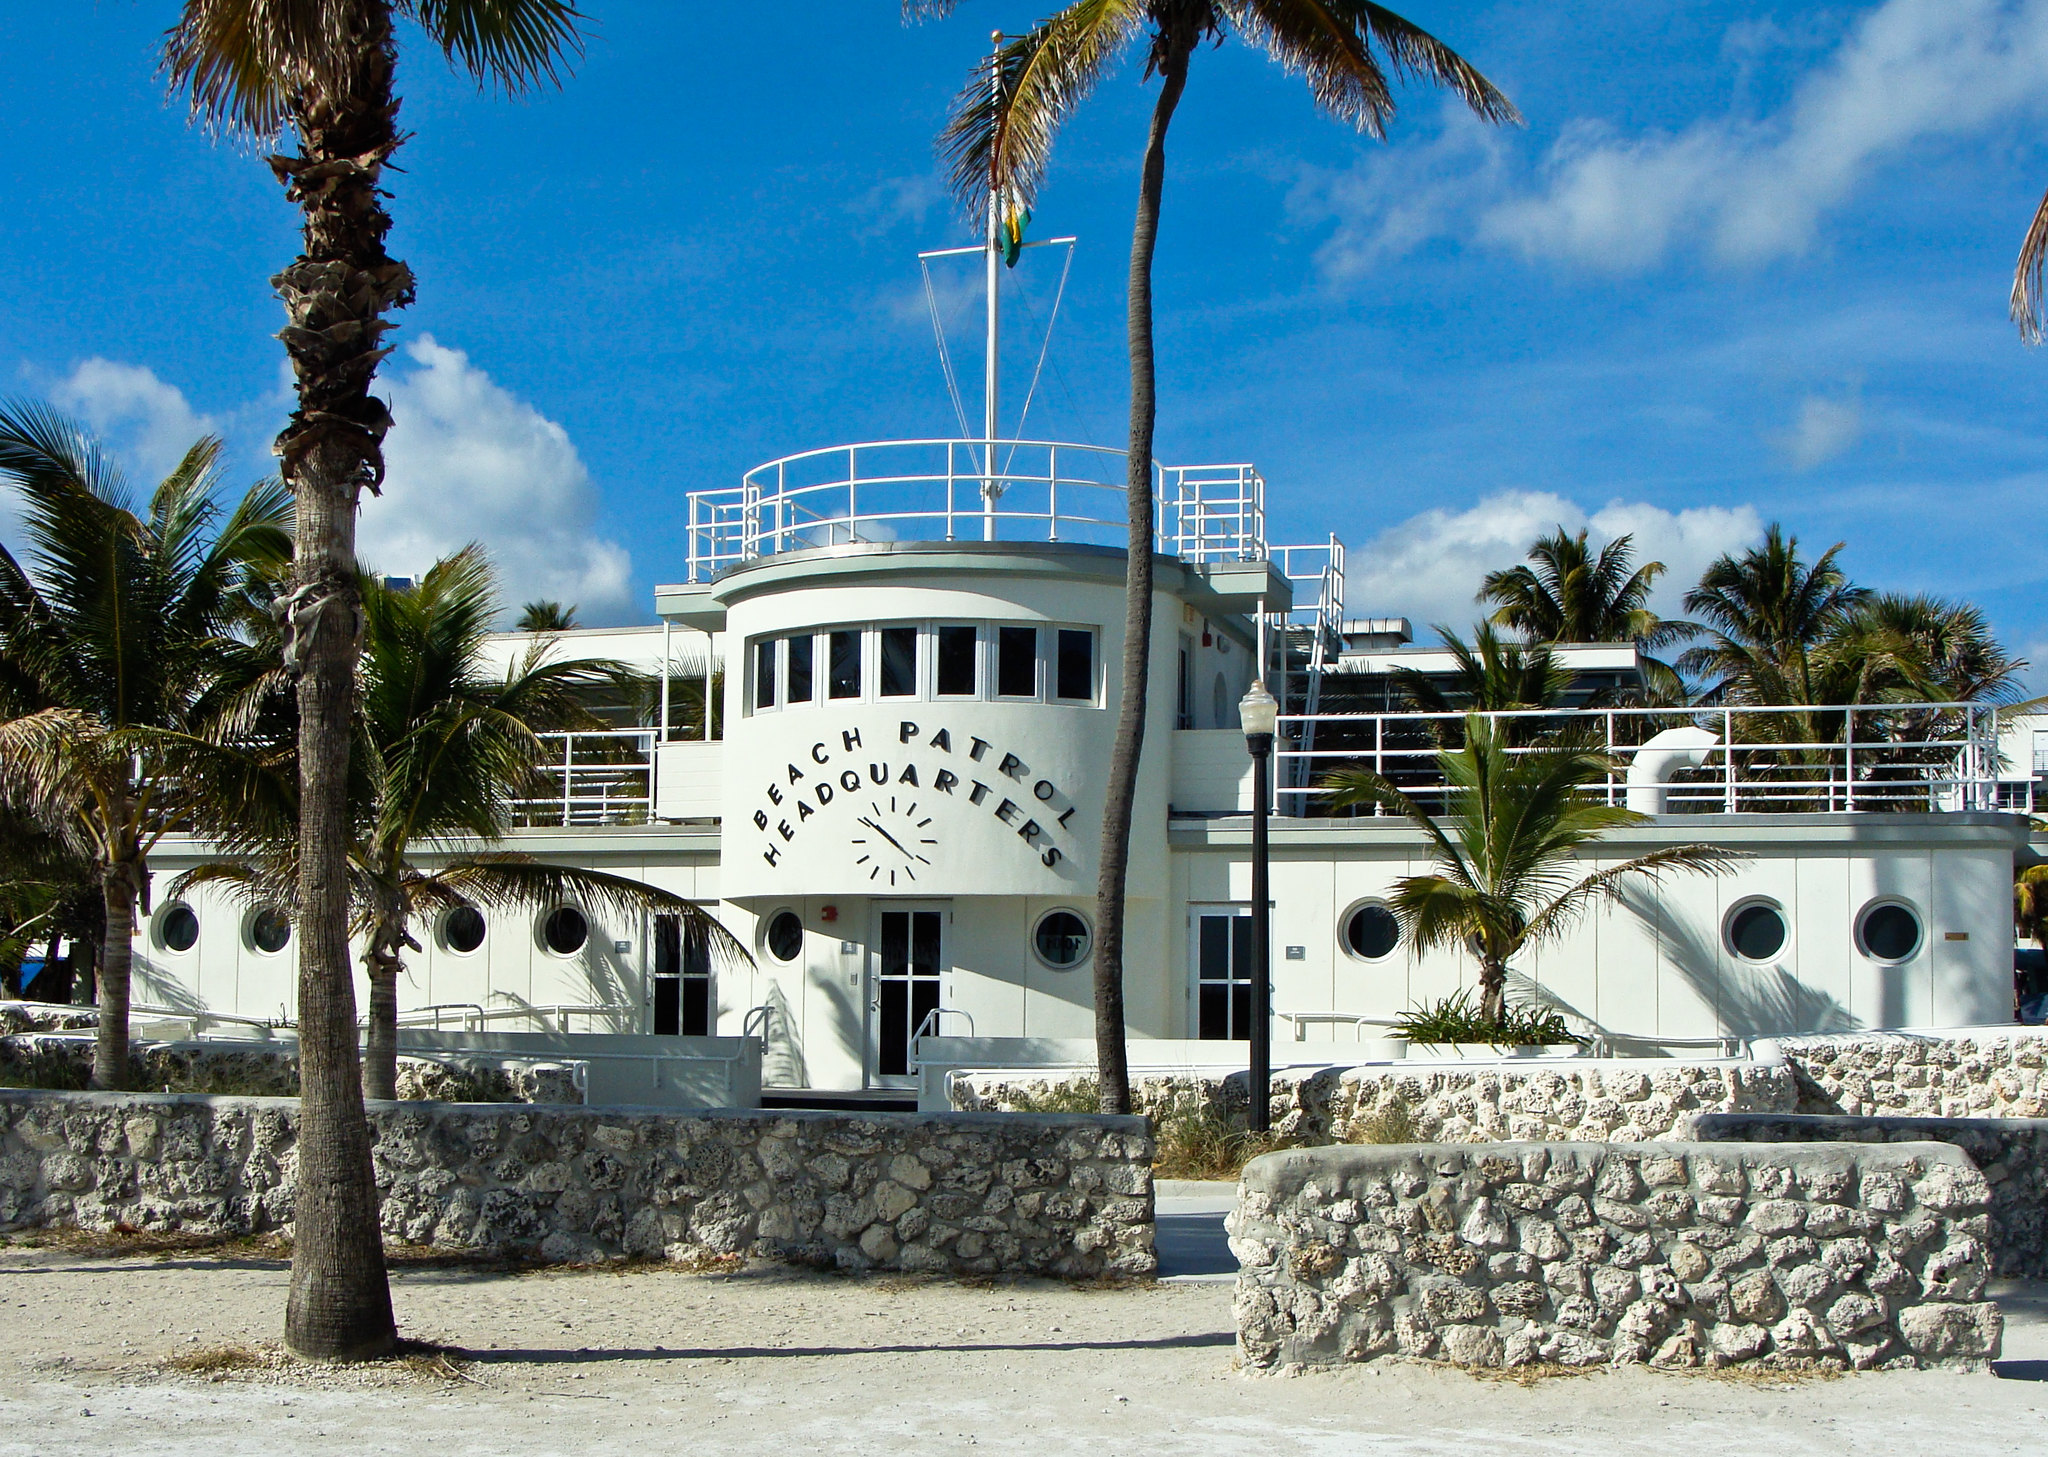 Immeuble blanc Art déco des sauveteurs en mer de Miami, avec l'inscription « Beach Patrol Headquarters » en façade